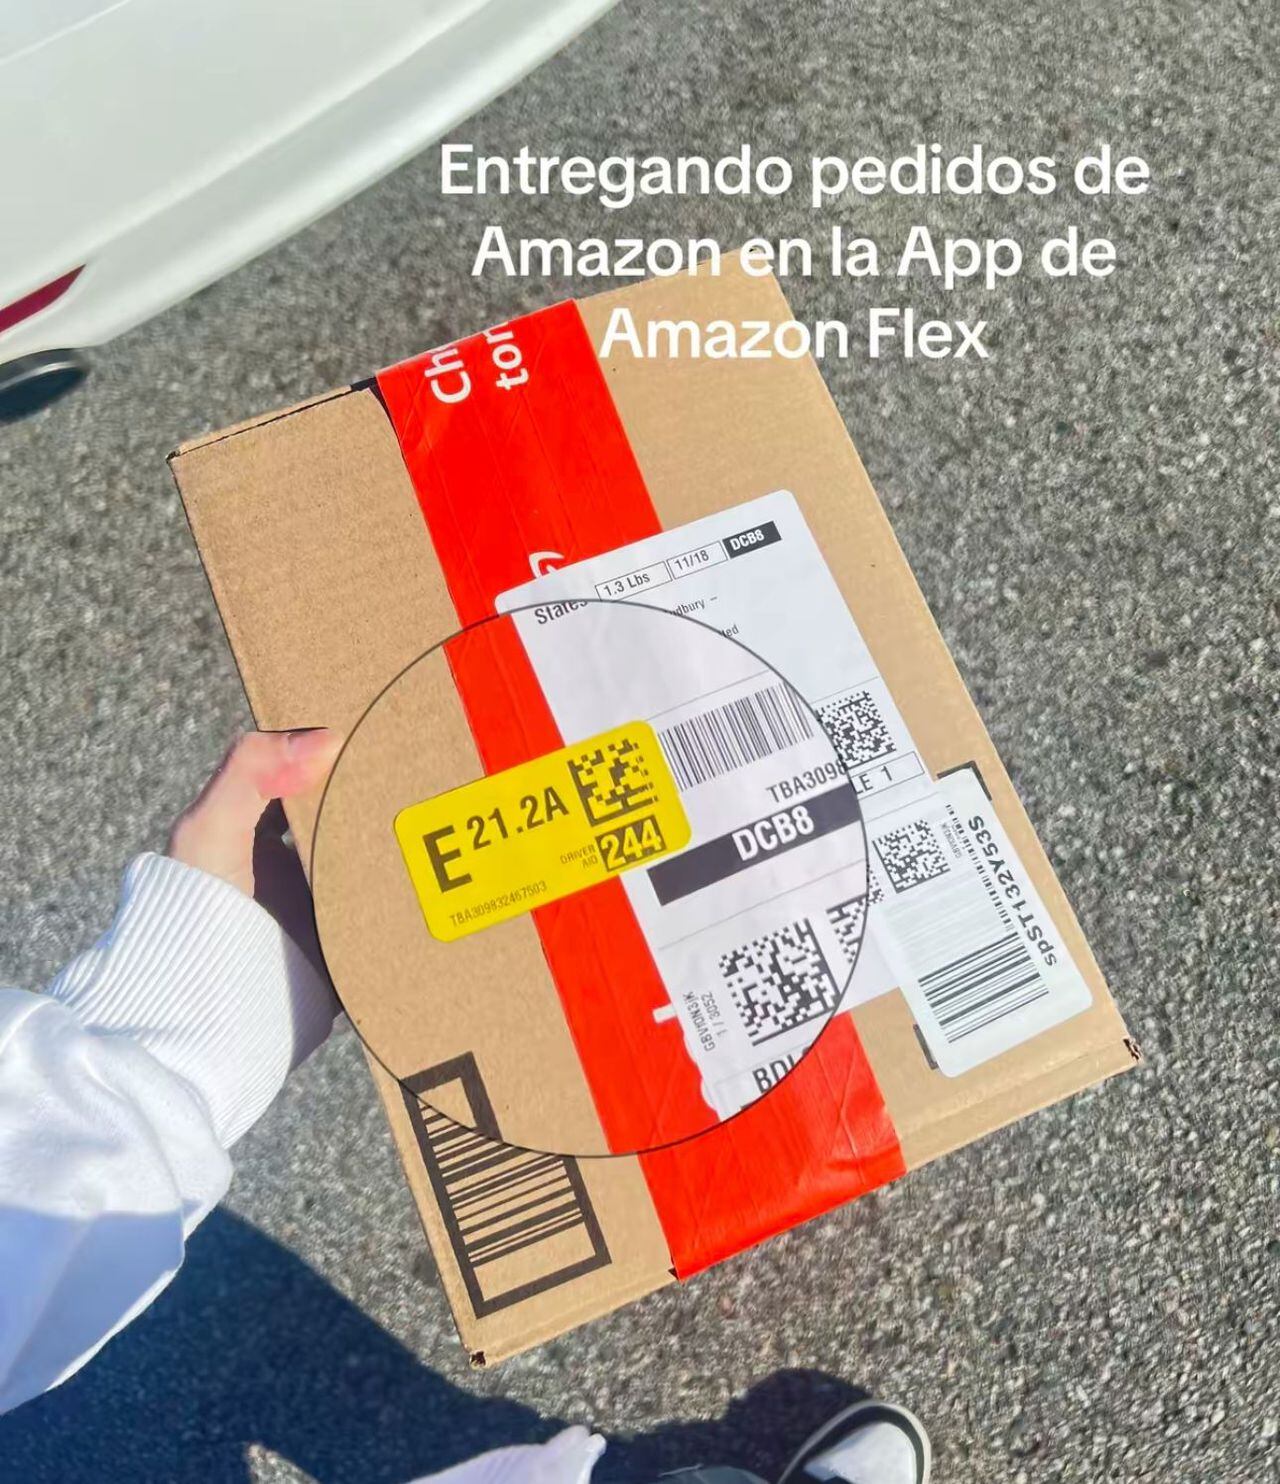 Otro de los empleos es de domiciliario de paquetes de Amazon